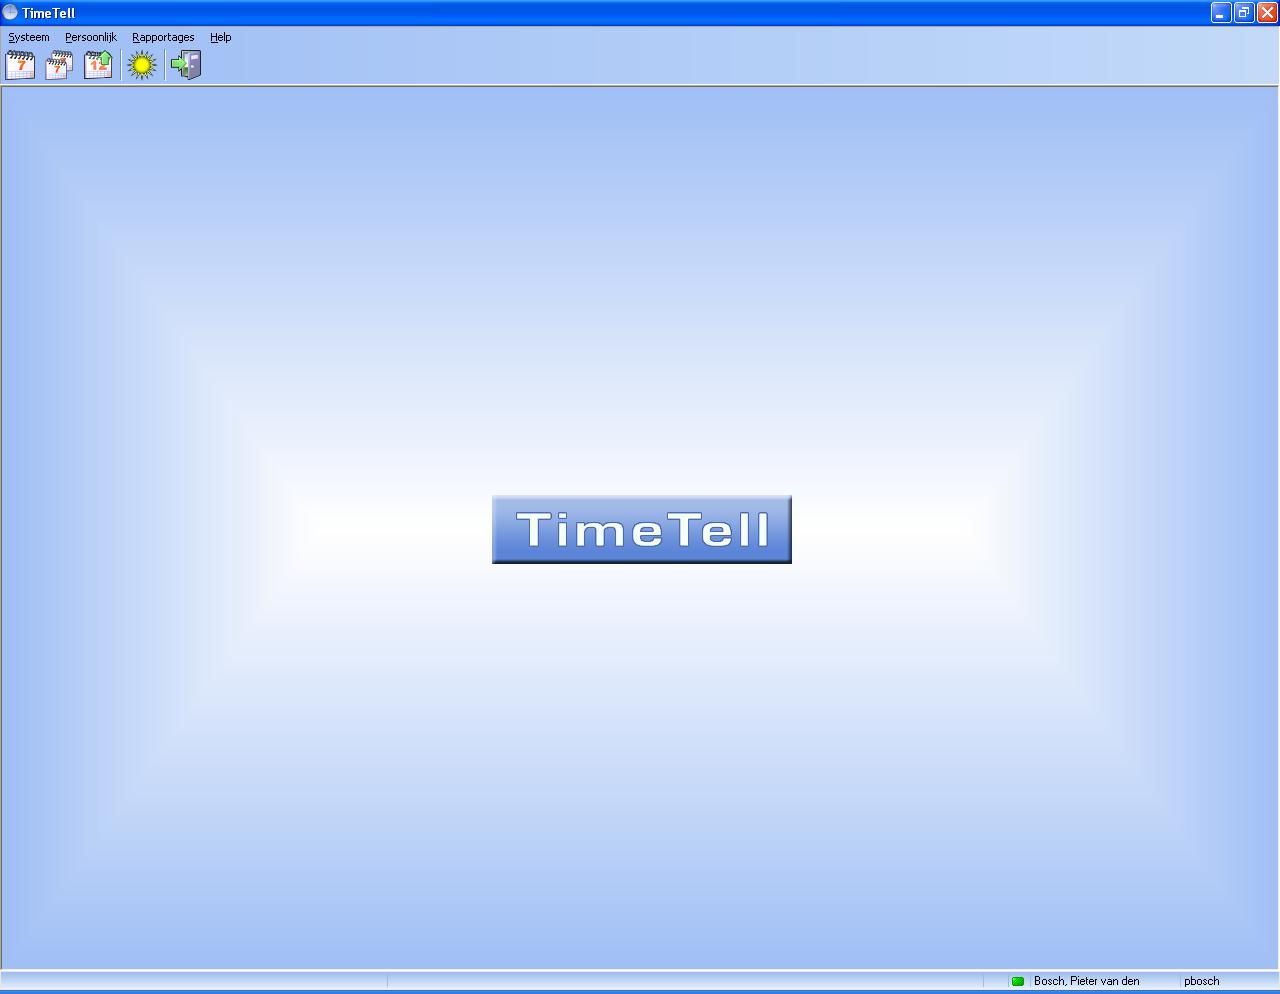 TimeTell kan ook worden geconfigureerd met een login scherm: In dat geval vult u hier uw TimeTell loginnaam en